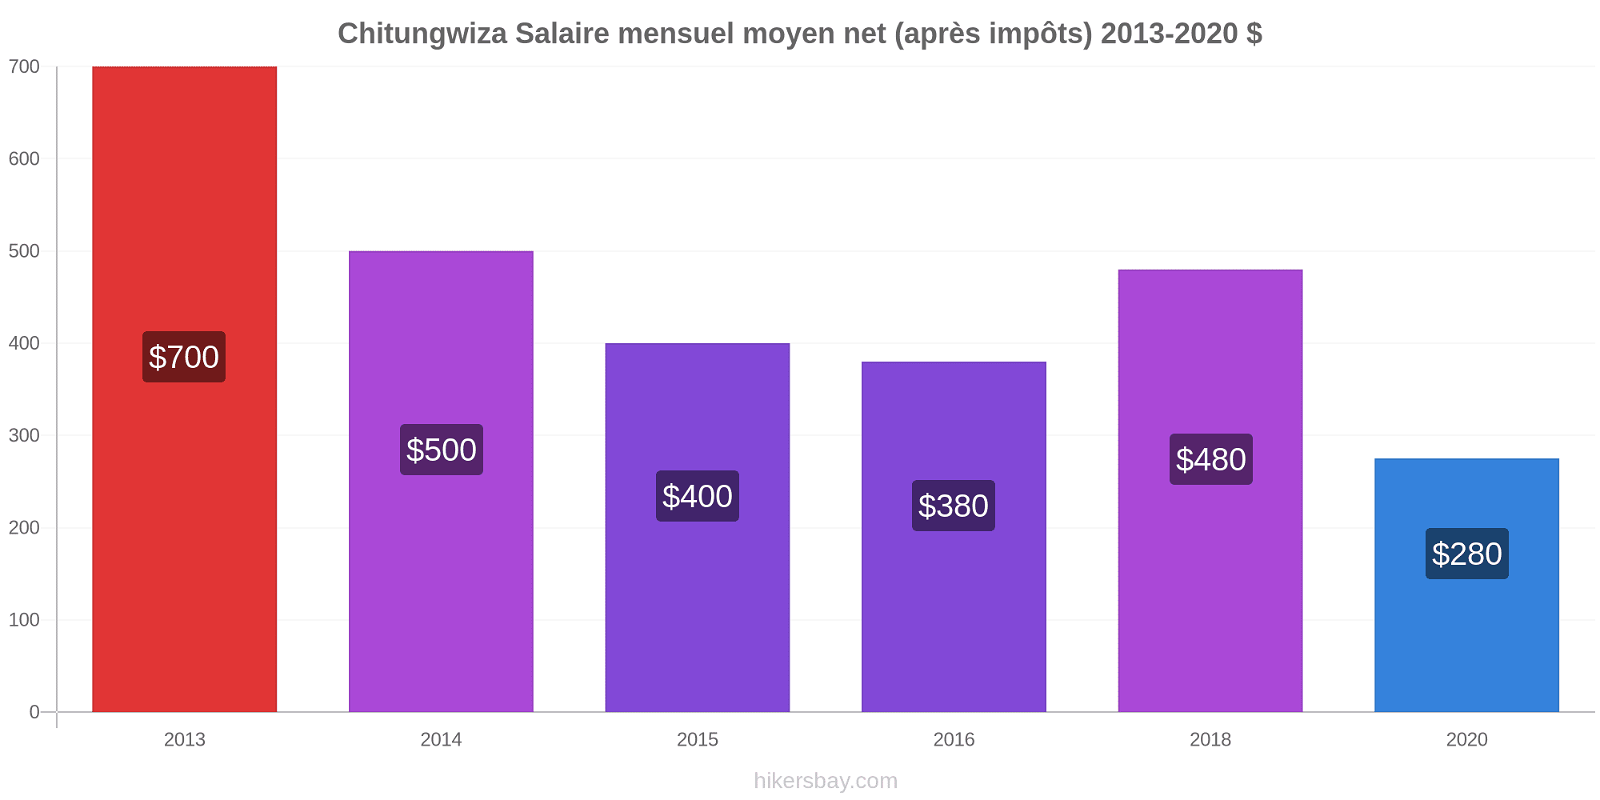 Chitungwiza changements de prix Salaire mensuel Net (après impôts) hikersbay.com